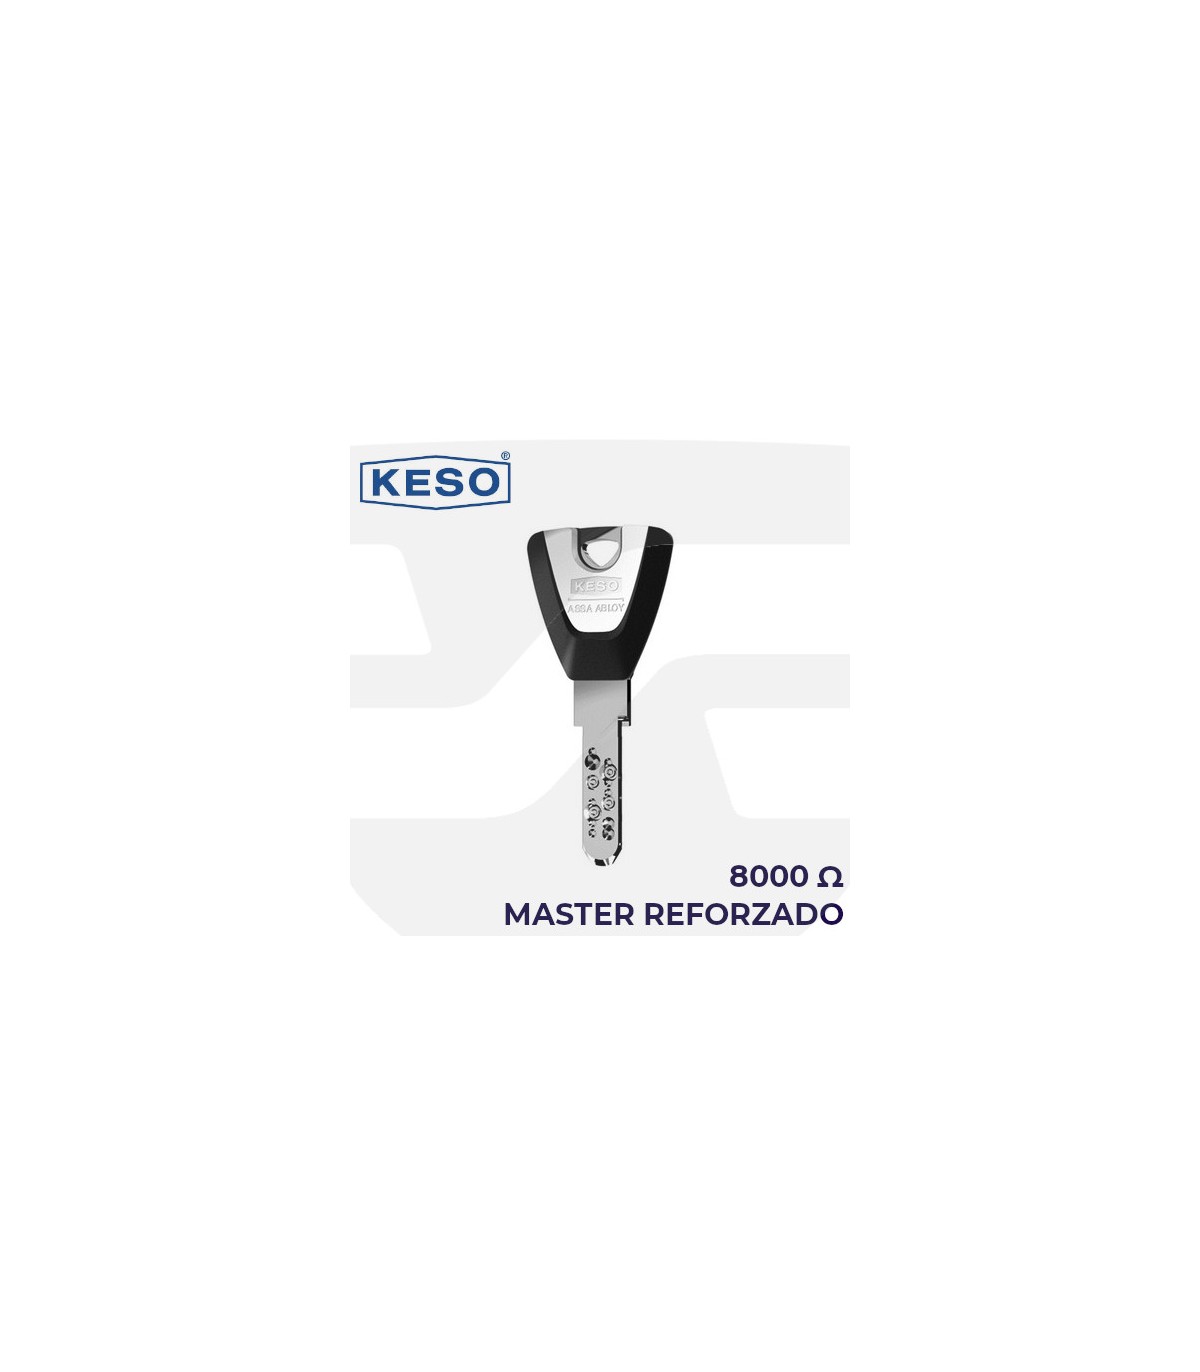 Cylinder KESO 8000, Reinforced Master